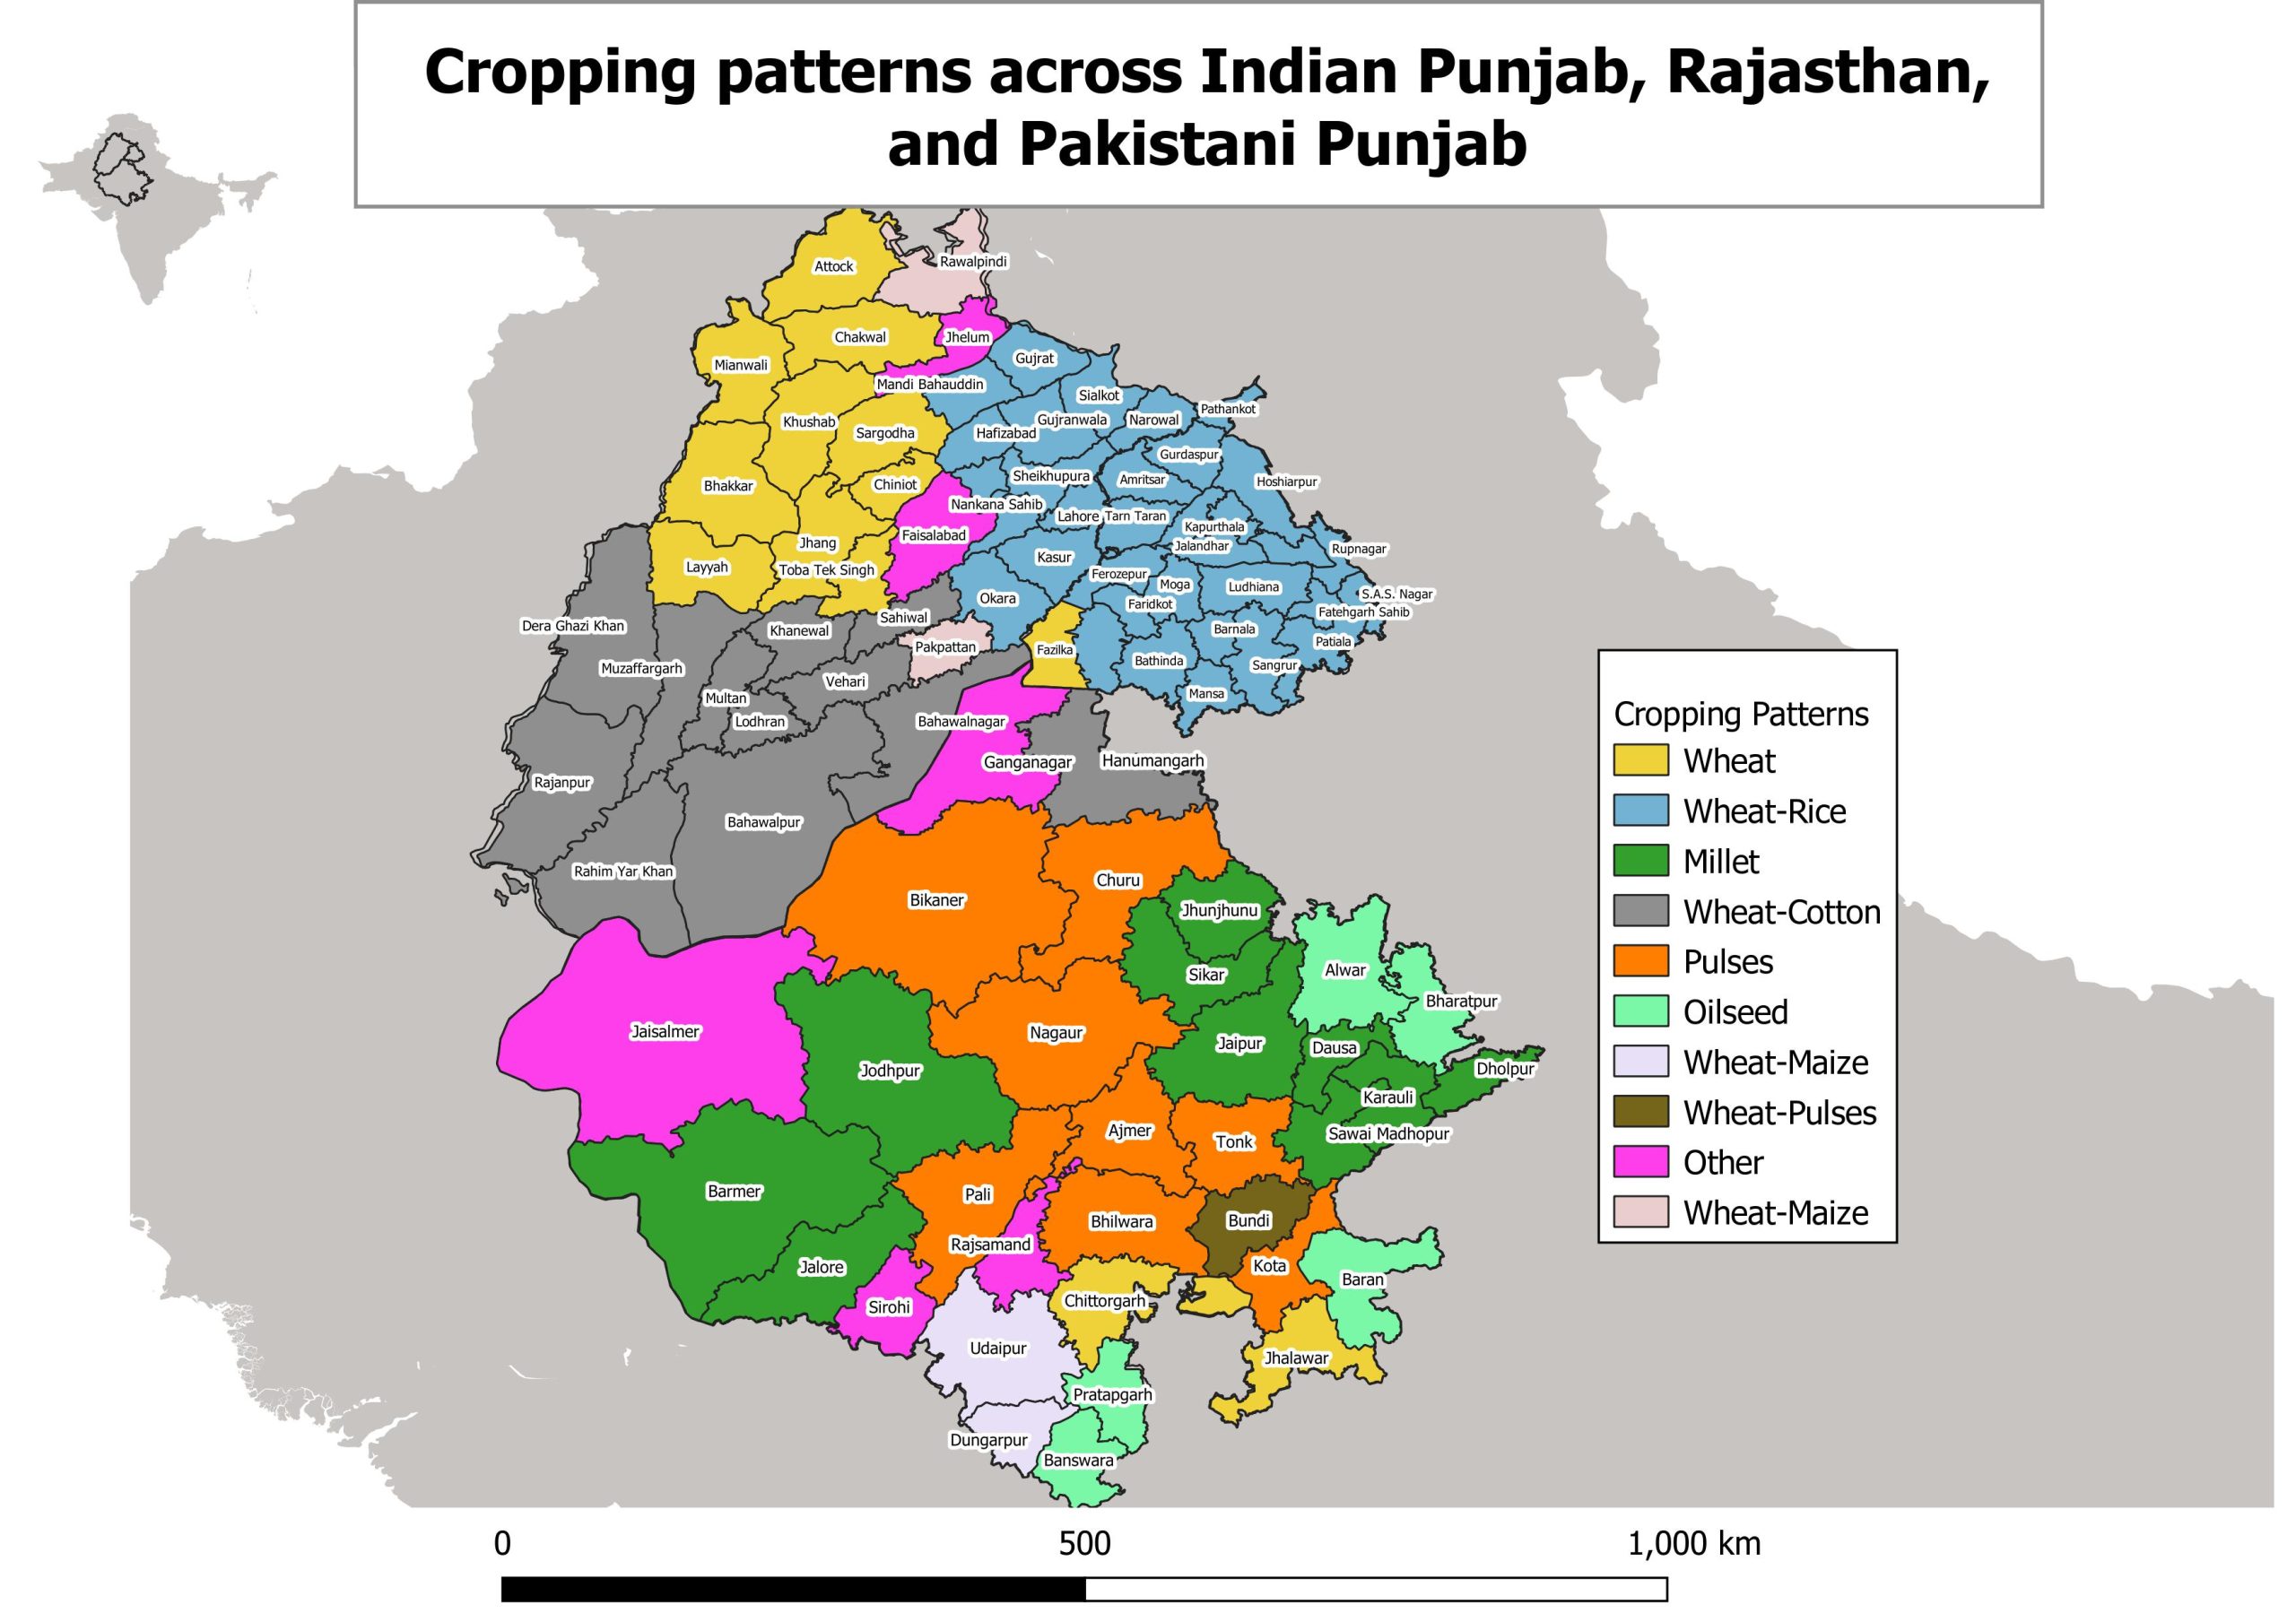 Map of cropping patterns across Indian Punjab, Rajasthan, and Pakistani Punjab